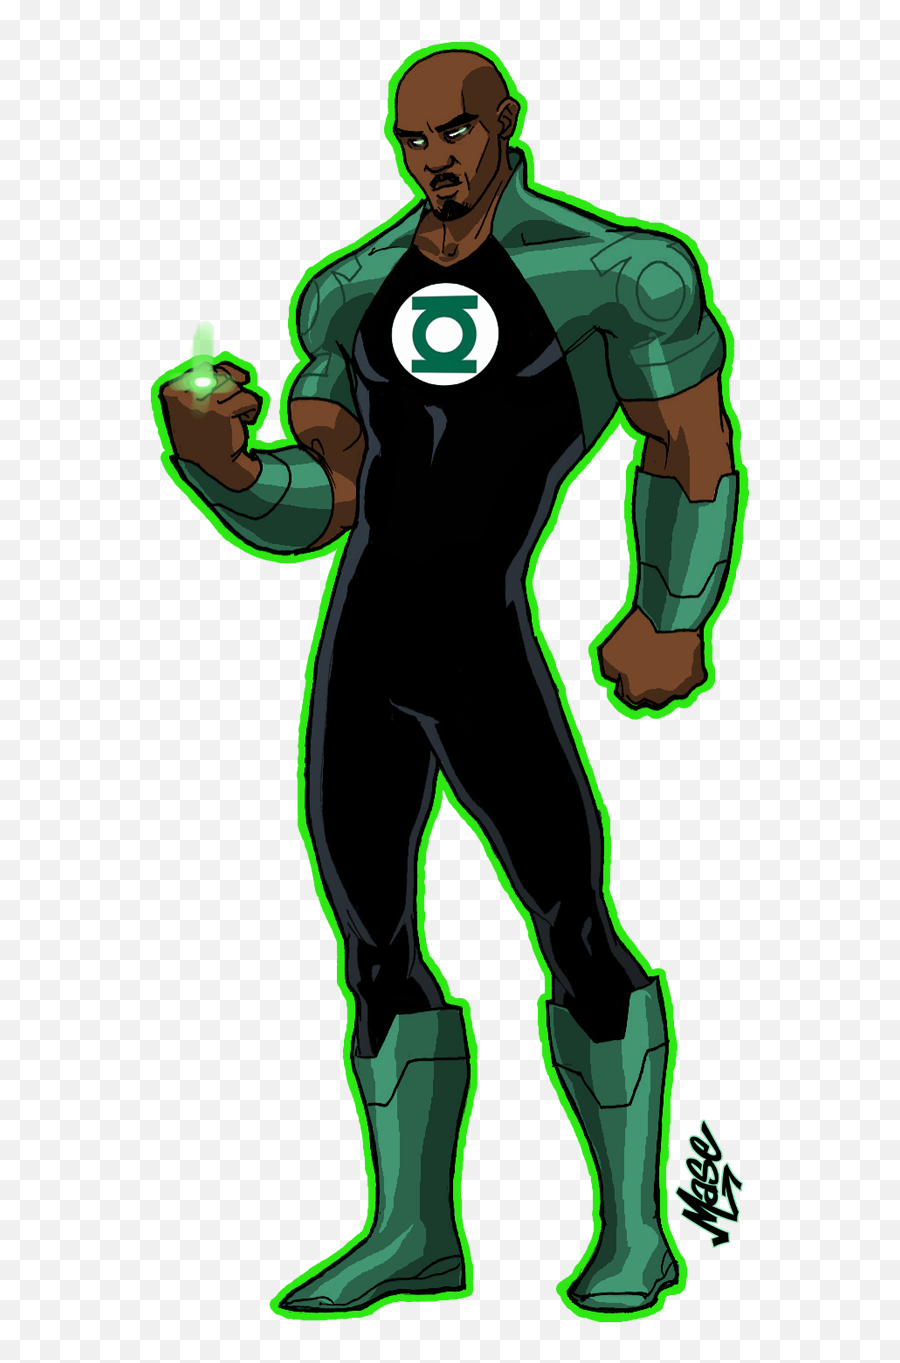 John Stewart Green Lantern Png Image - John Stewart Green Lantern,Green Lantern Transparent